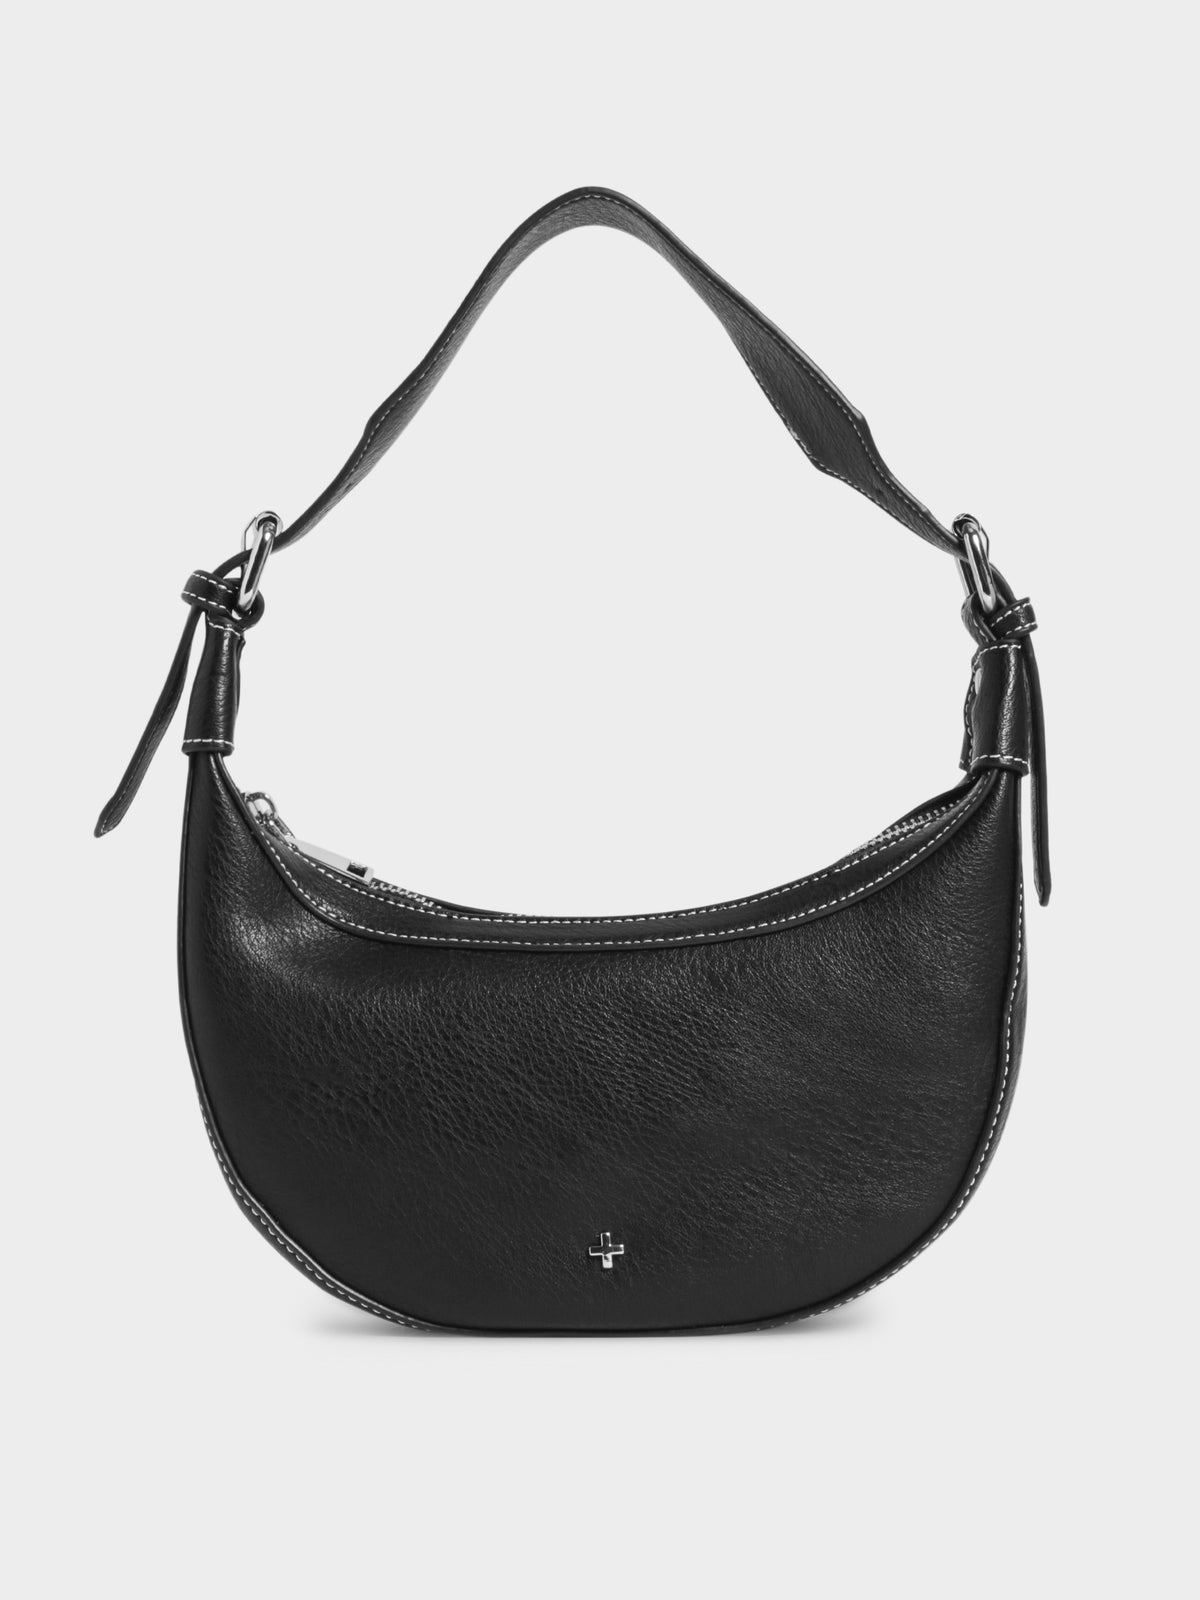 Kaley Hobo Handbag in Black